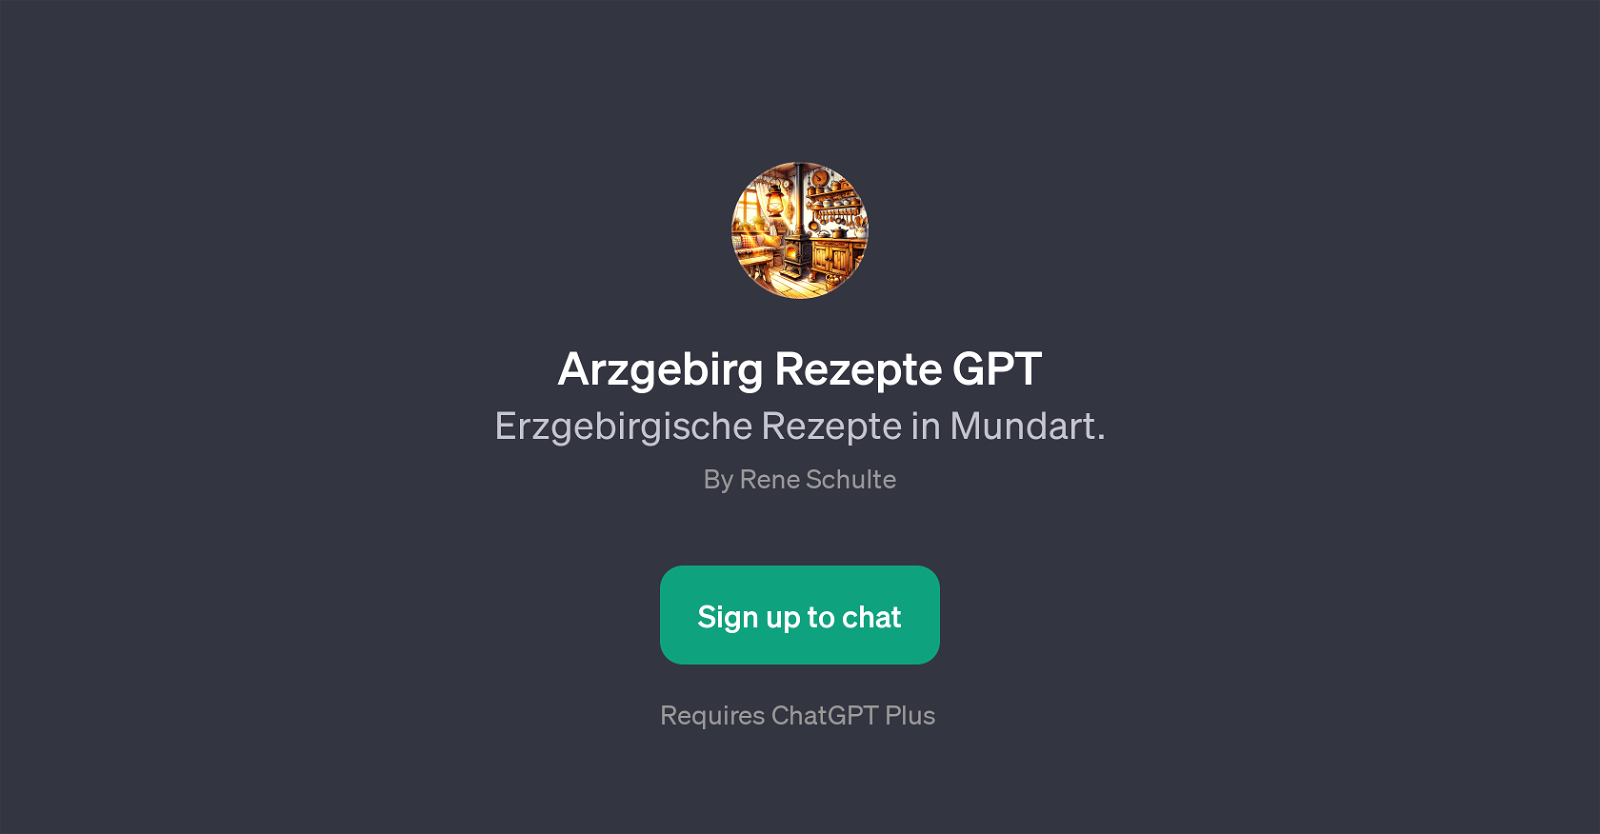 Arzgebirg Rezepte GPT website